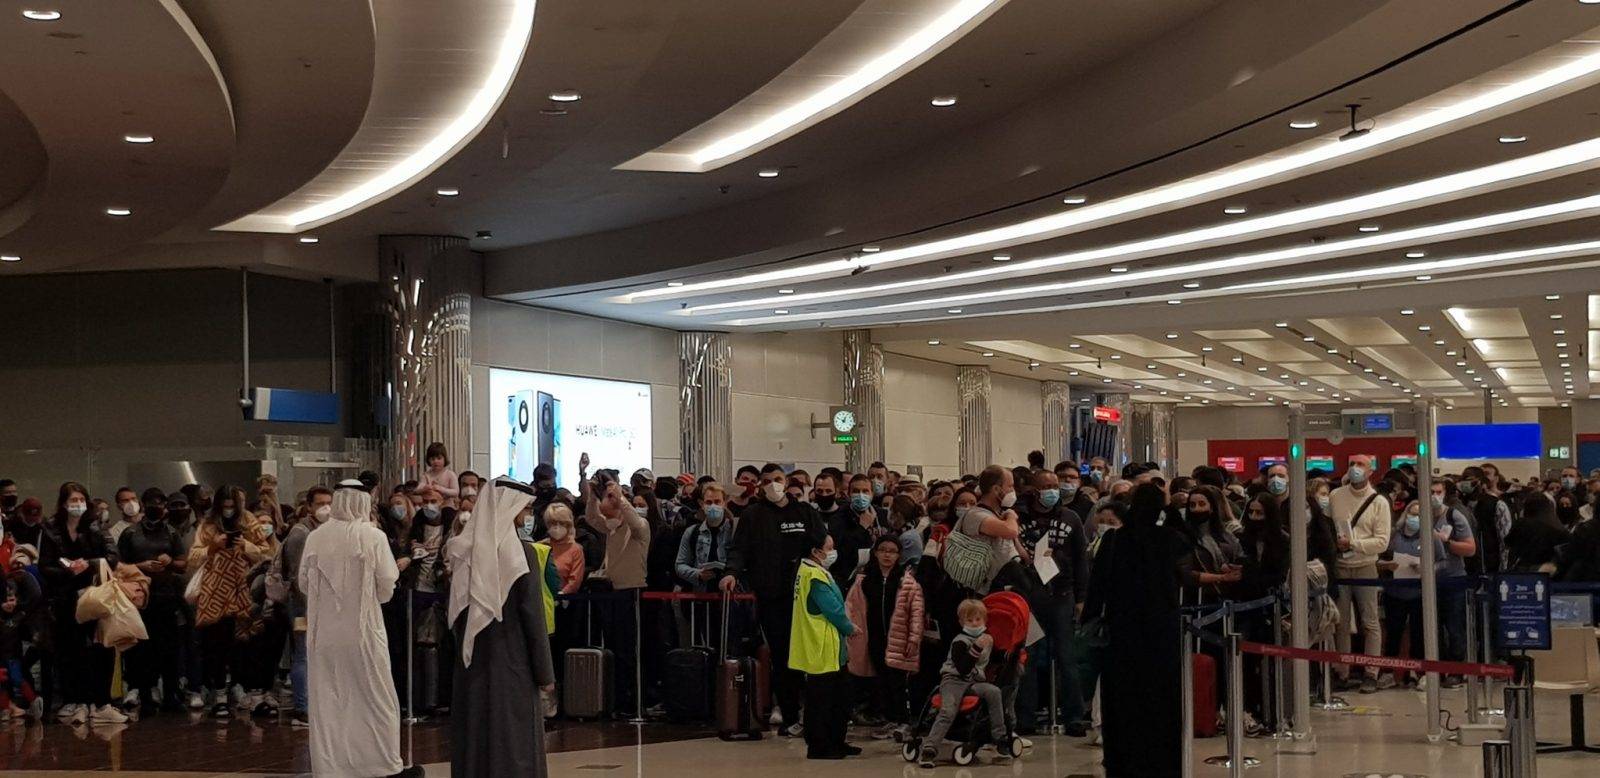 大批人群参加新年庆祝活动,迪拜国际机场出现混乱!